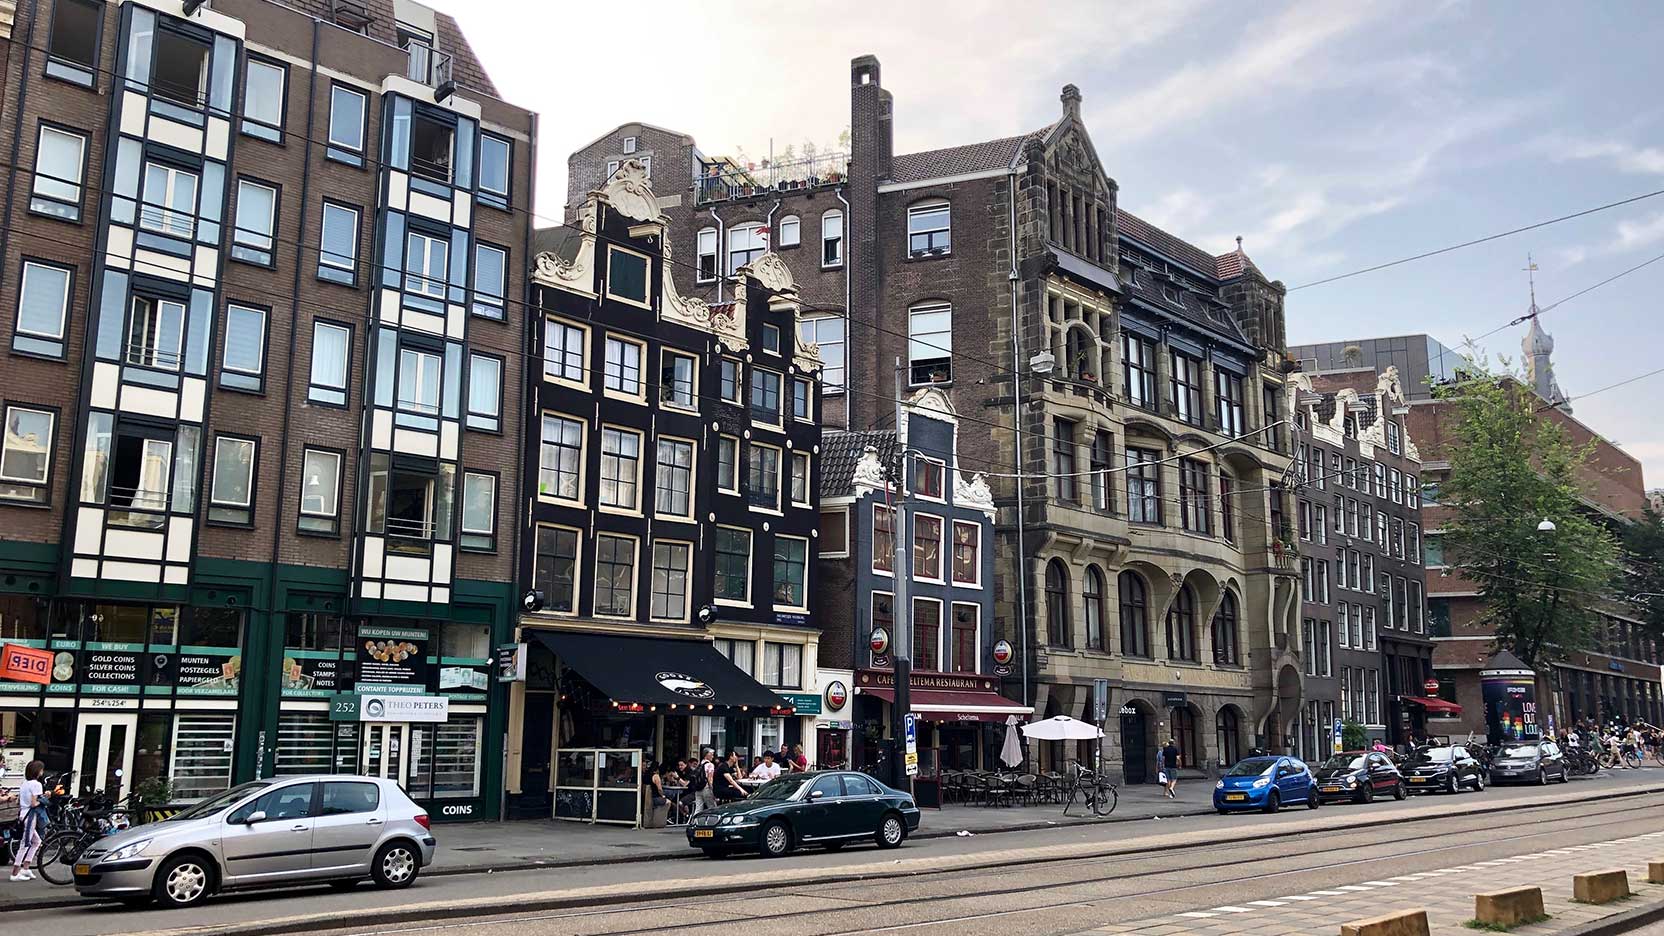 Nieuwezijds Voorburgwal, Amsterdam